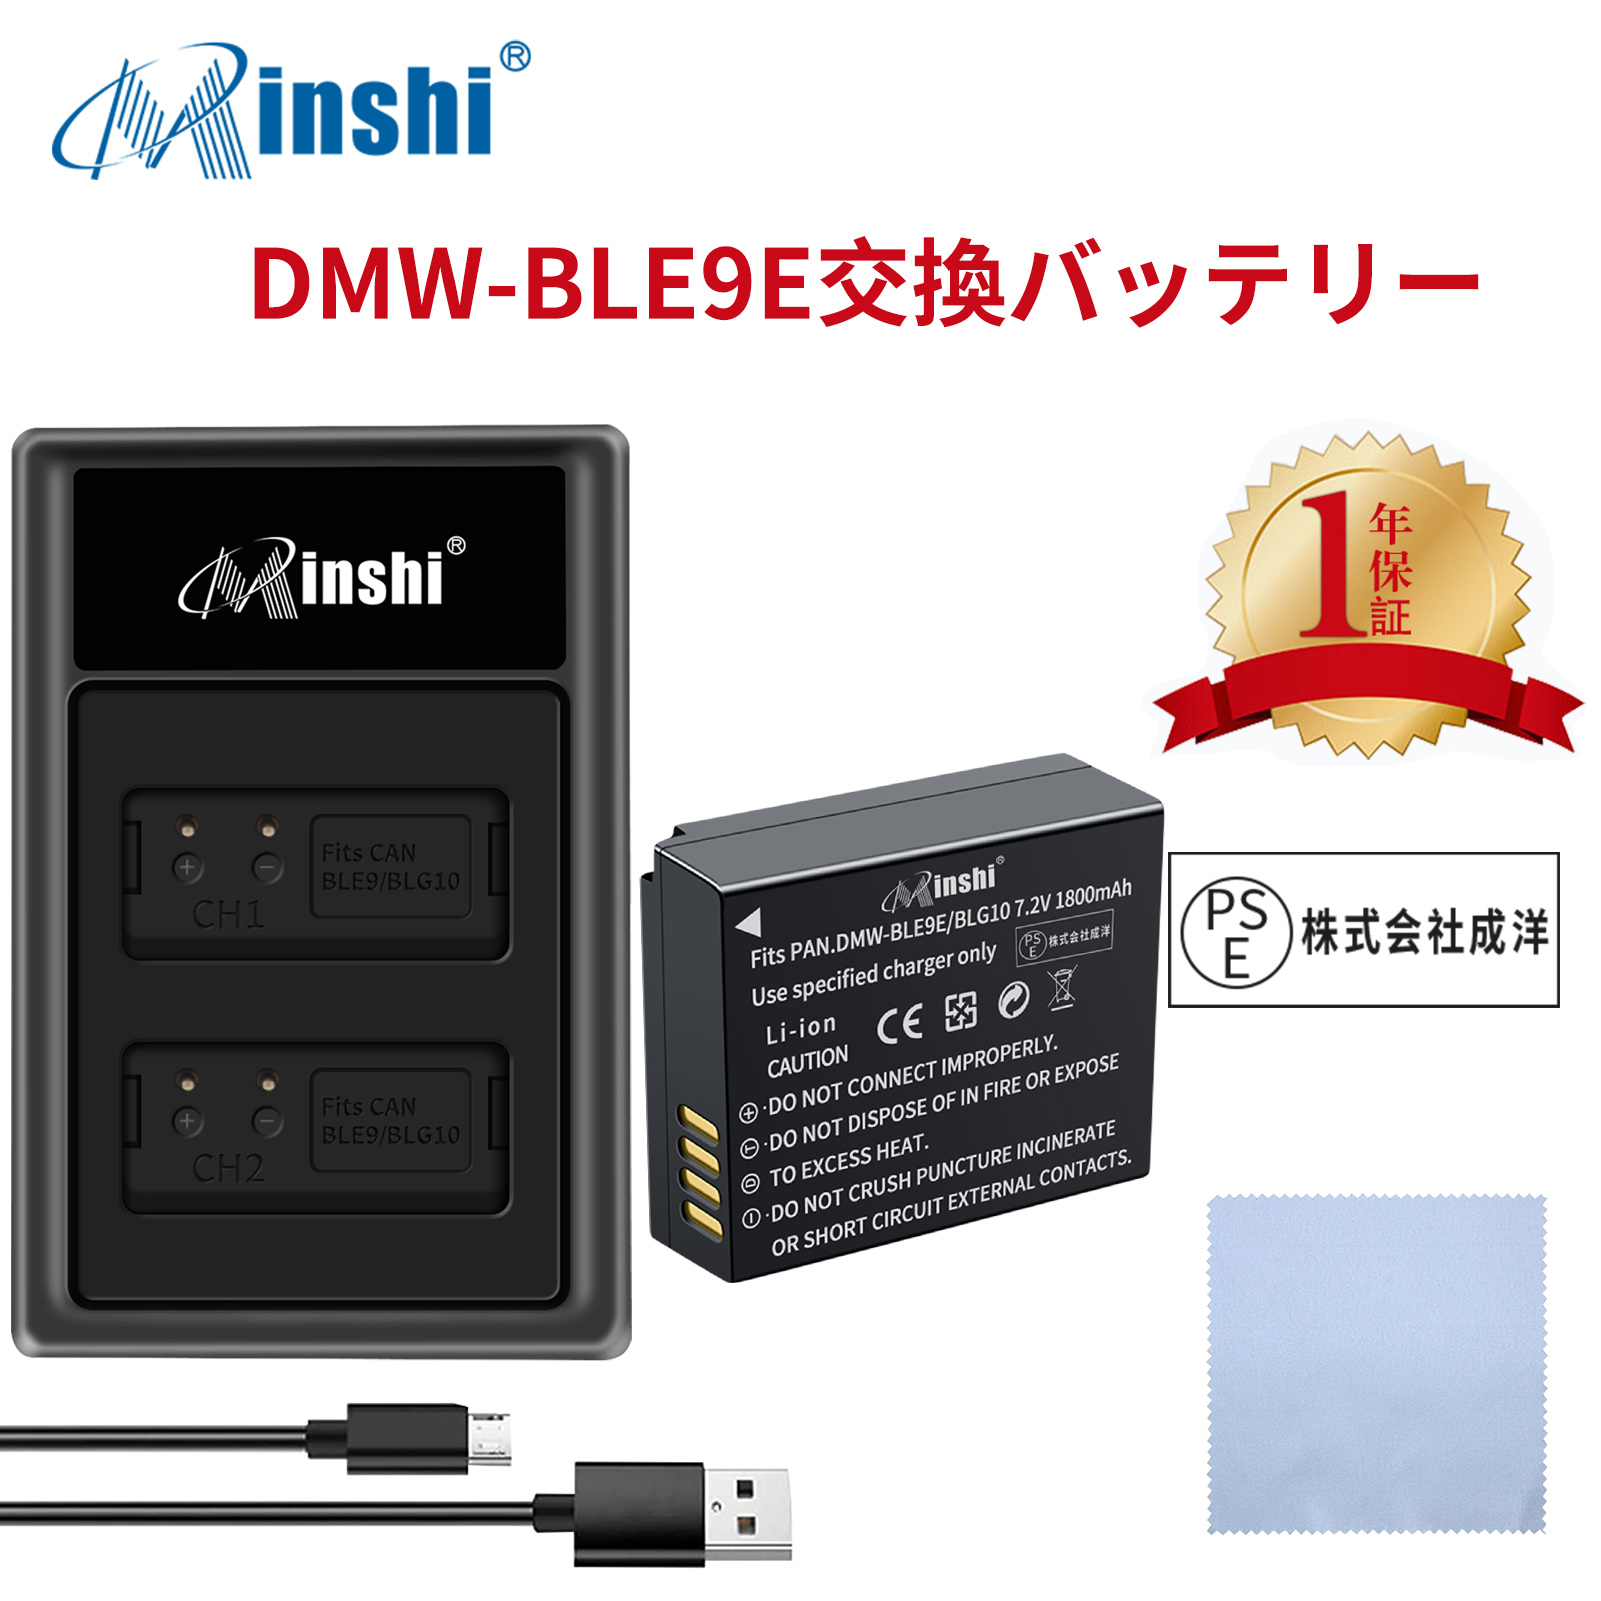 【セット】minshi Panasonic DMC-GX7 Mark II 【1800mAh 7.2V】PSE認定済 高品質DMW-BLG10互換バッテリーPHB